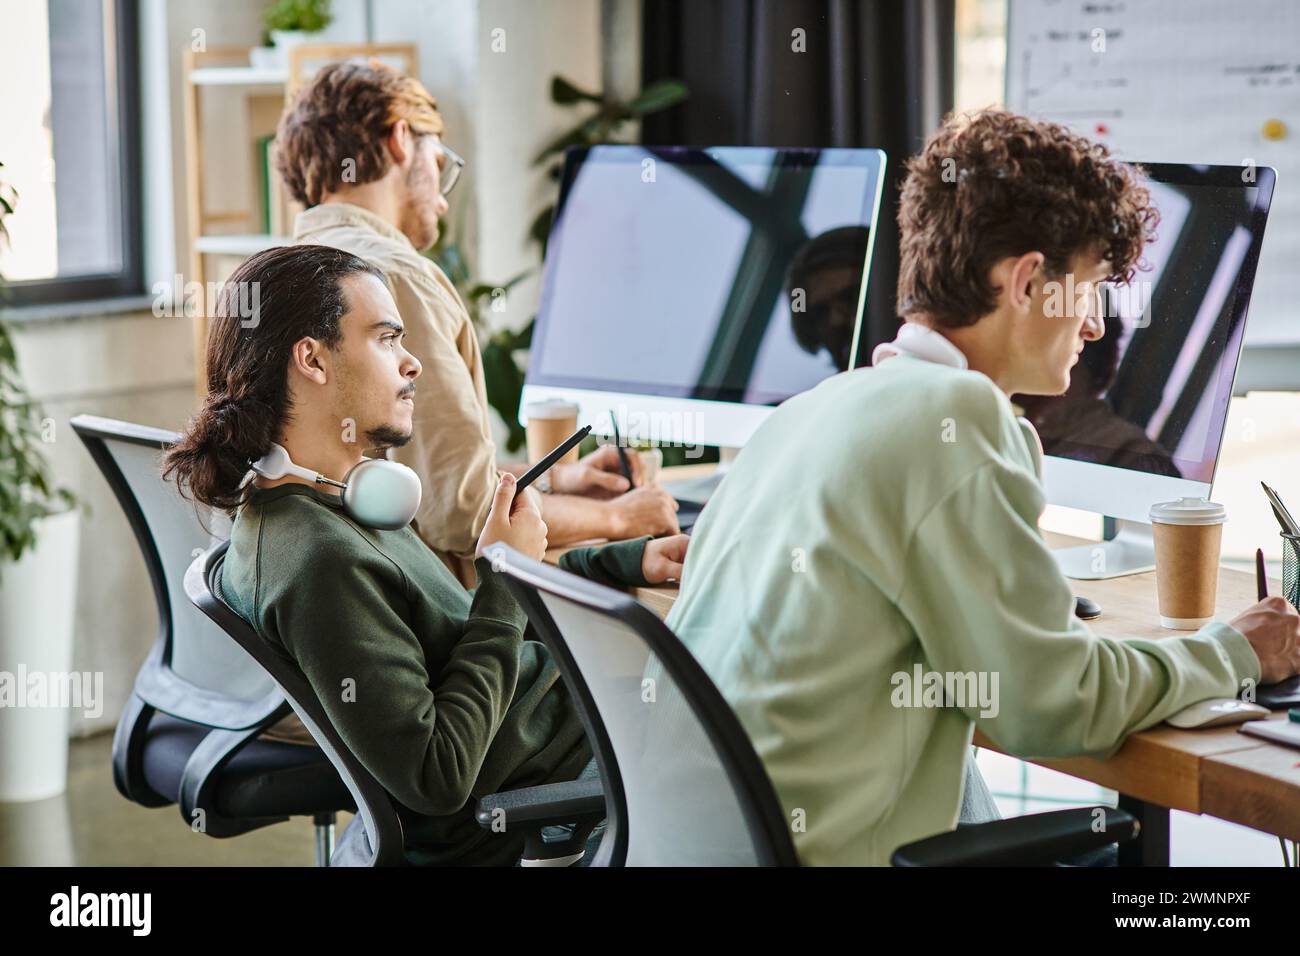 Junger Mann mit Kopfhörern, der Fotos auf dem Tablet bearbeitet und den Monitor im Startup-Büro betrachtet Stockfoto